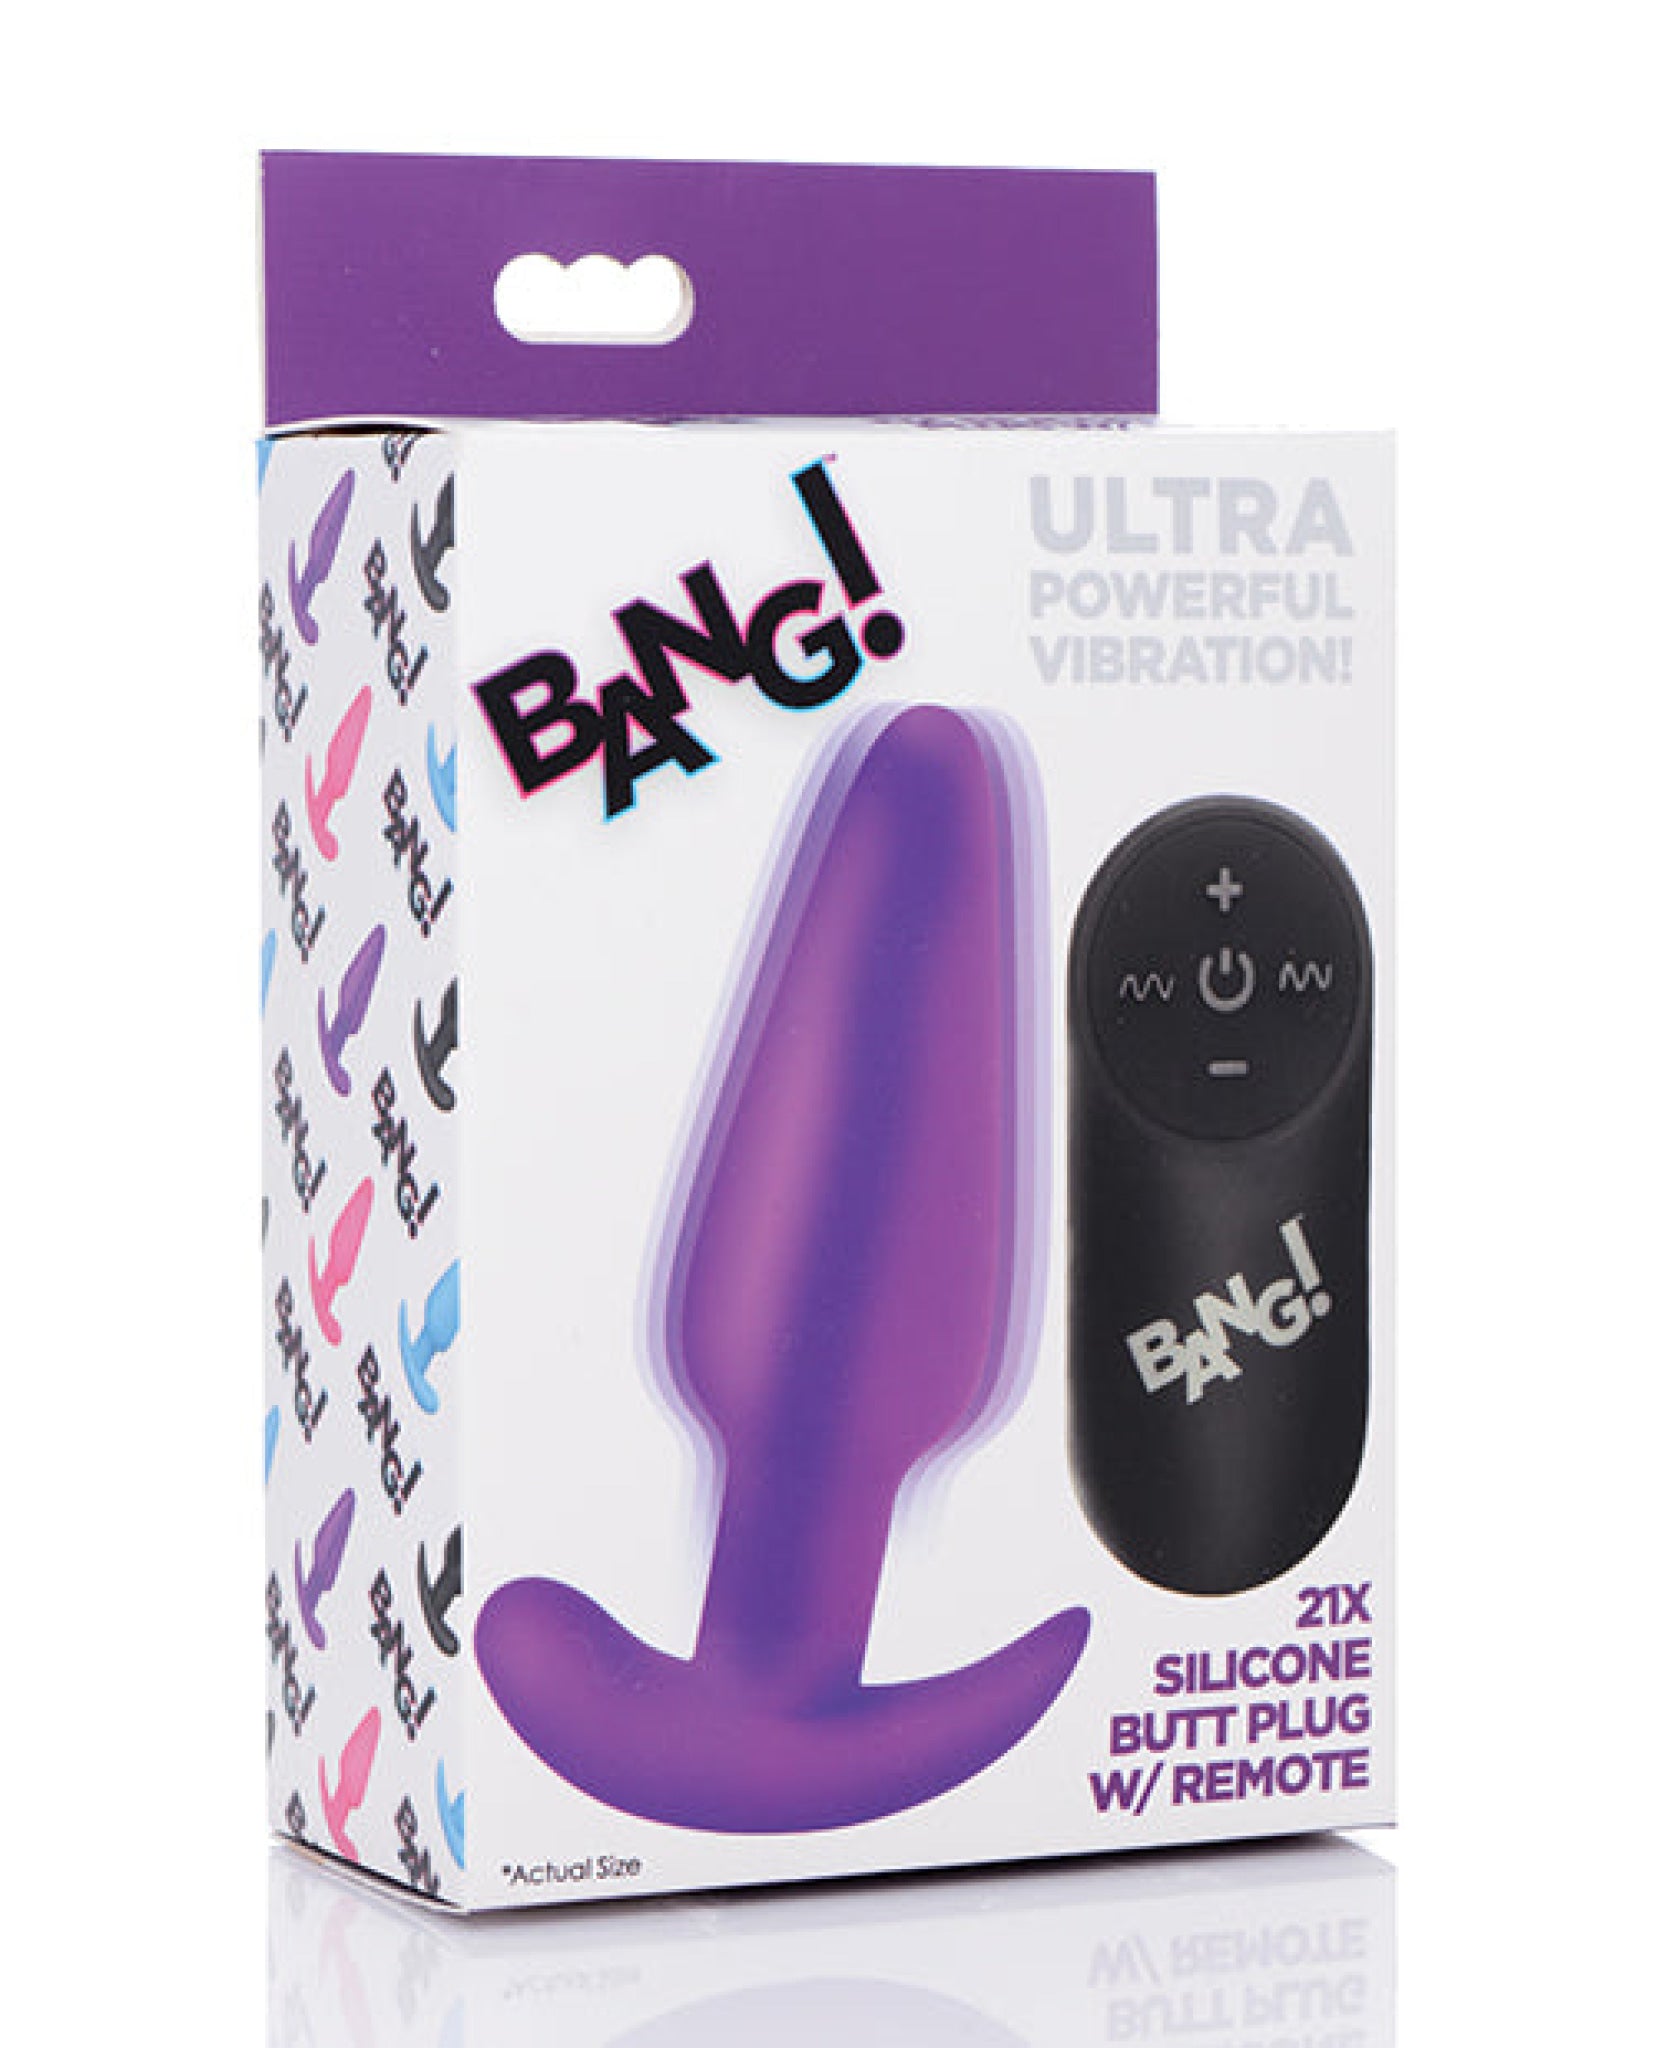 Bang! 21x Vibrating Silicone Butt Plug W/remote Bang!